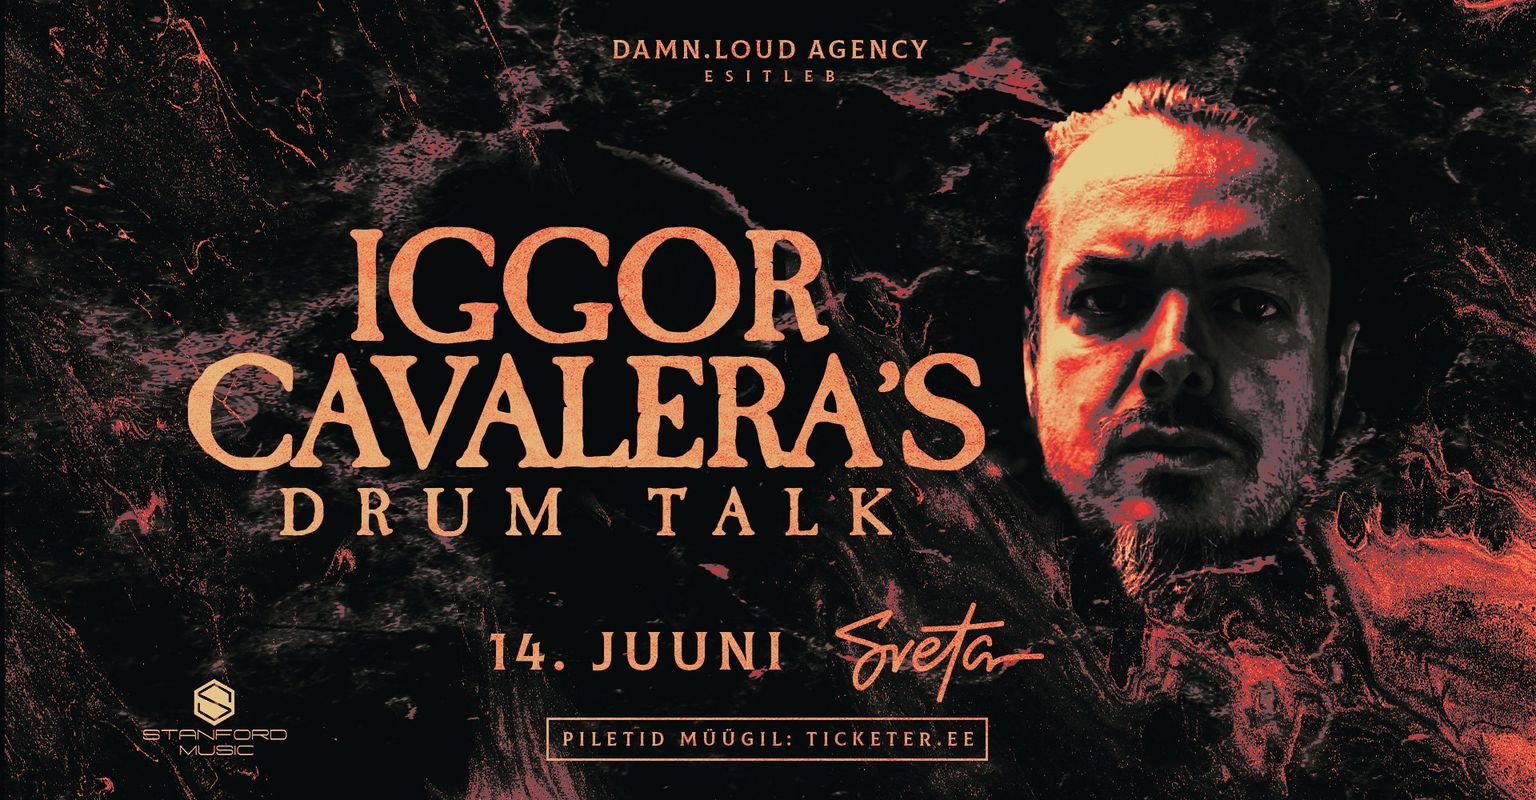 Iggor Cavalera’s Drum Talk.